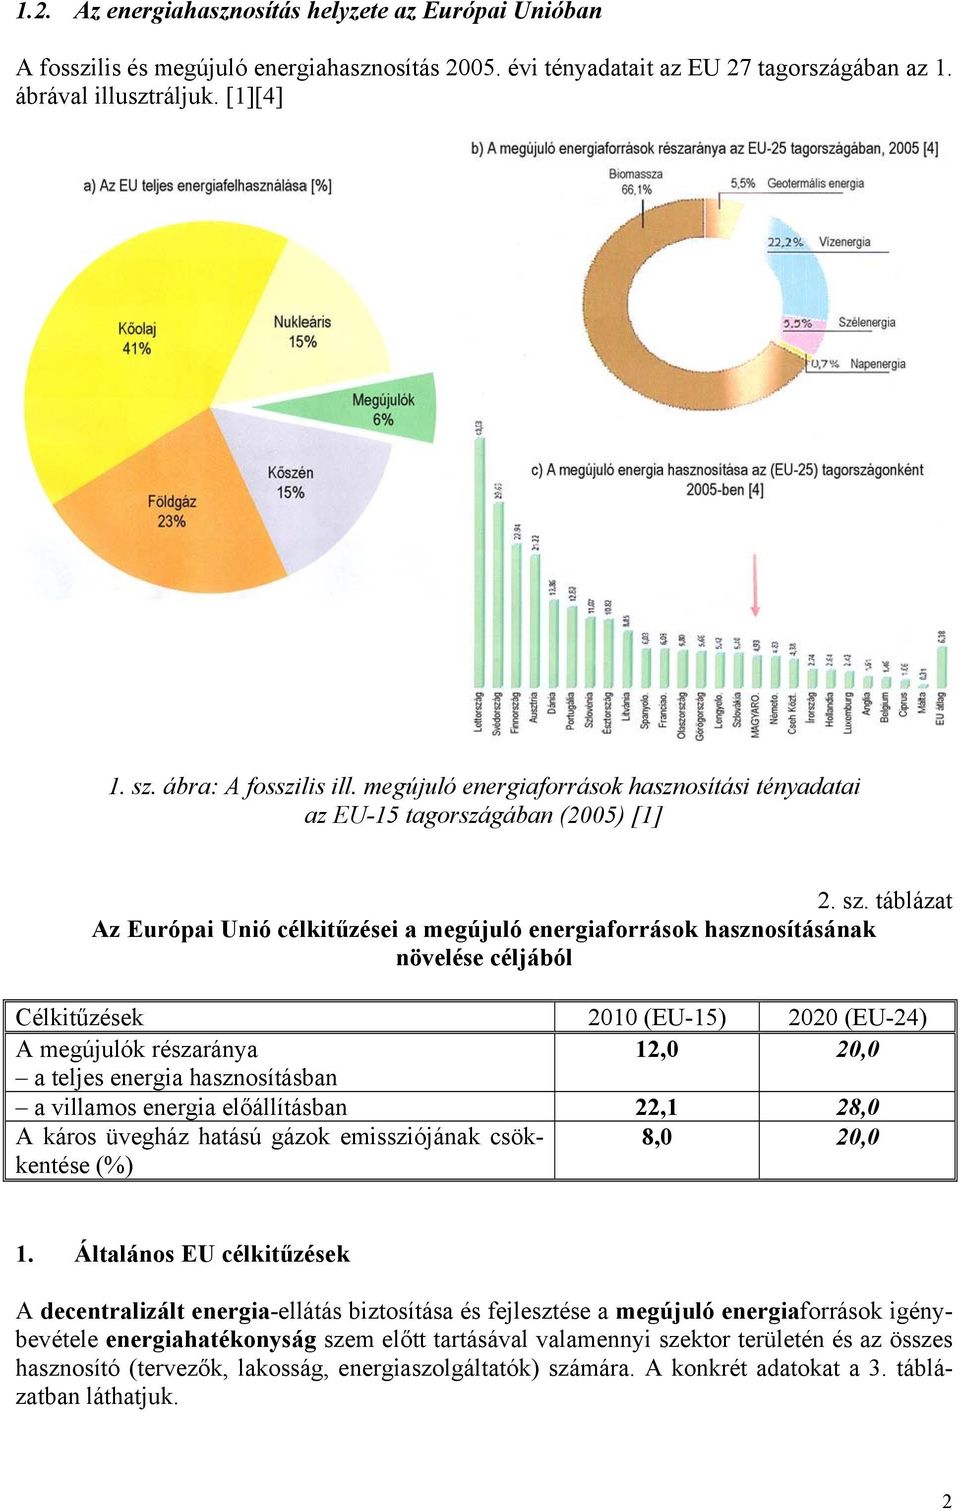 táblázat Az Európai Unió célkitűzései a megújuló energiaforrások hasznosításának növelése céljából Célkitűzések 2010 (EU-15) 2020 (EU-24) A megújulók részaránya 12,0 20,0 a teljes energia